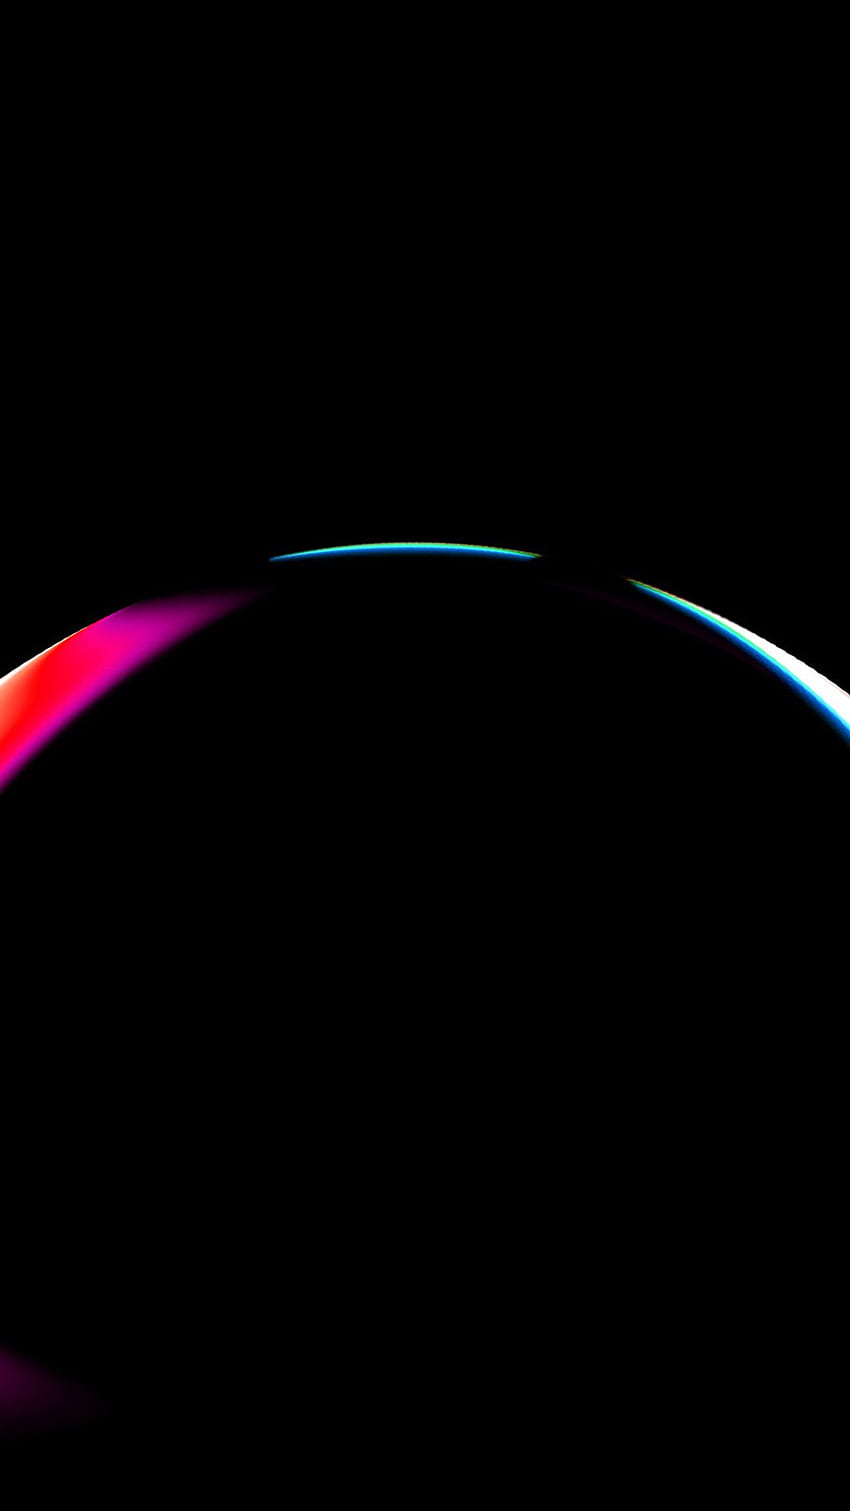 iPhoneX. de patrón de arco iris oscuro de arte lenz, arco iris negro fondo de pantalla del teléfono